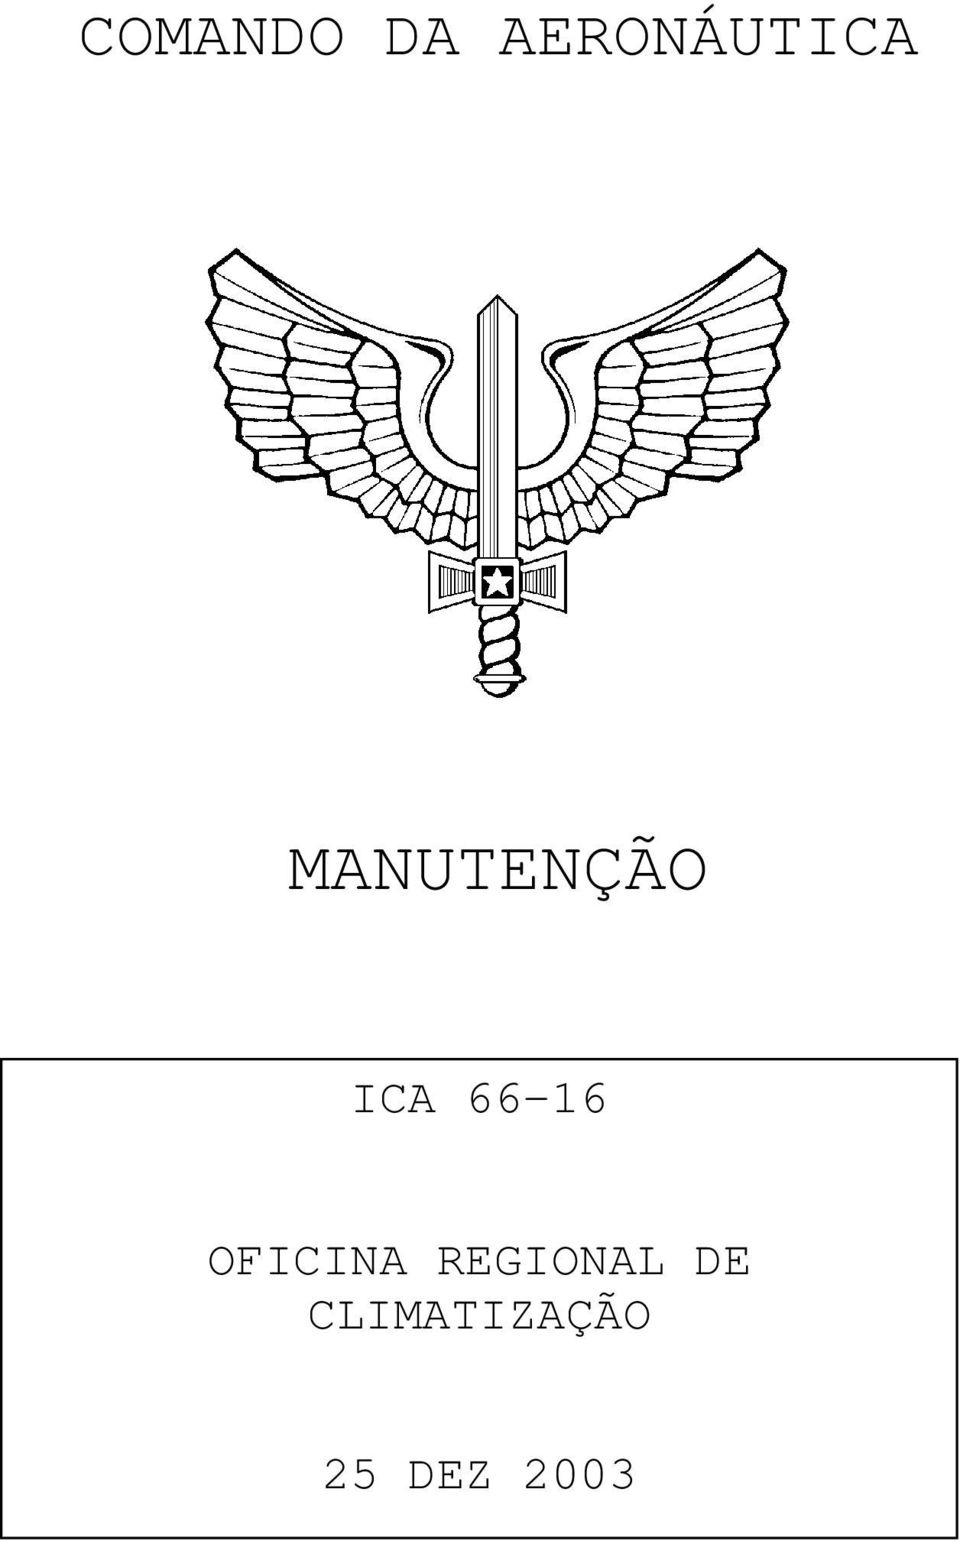 MANUTENÇÃO ICA 66-16